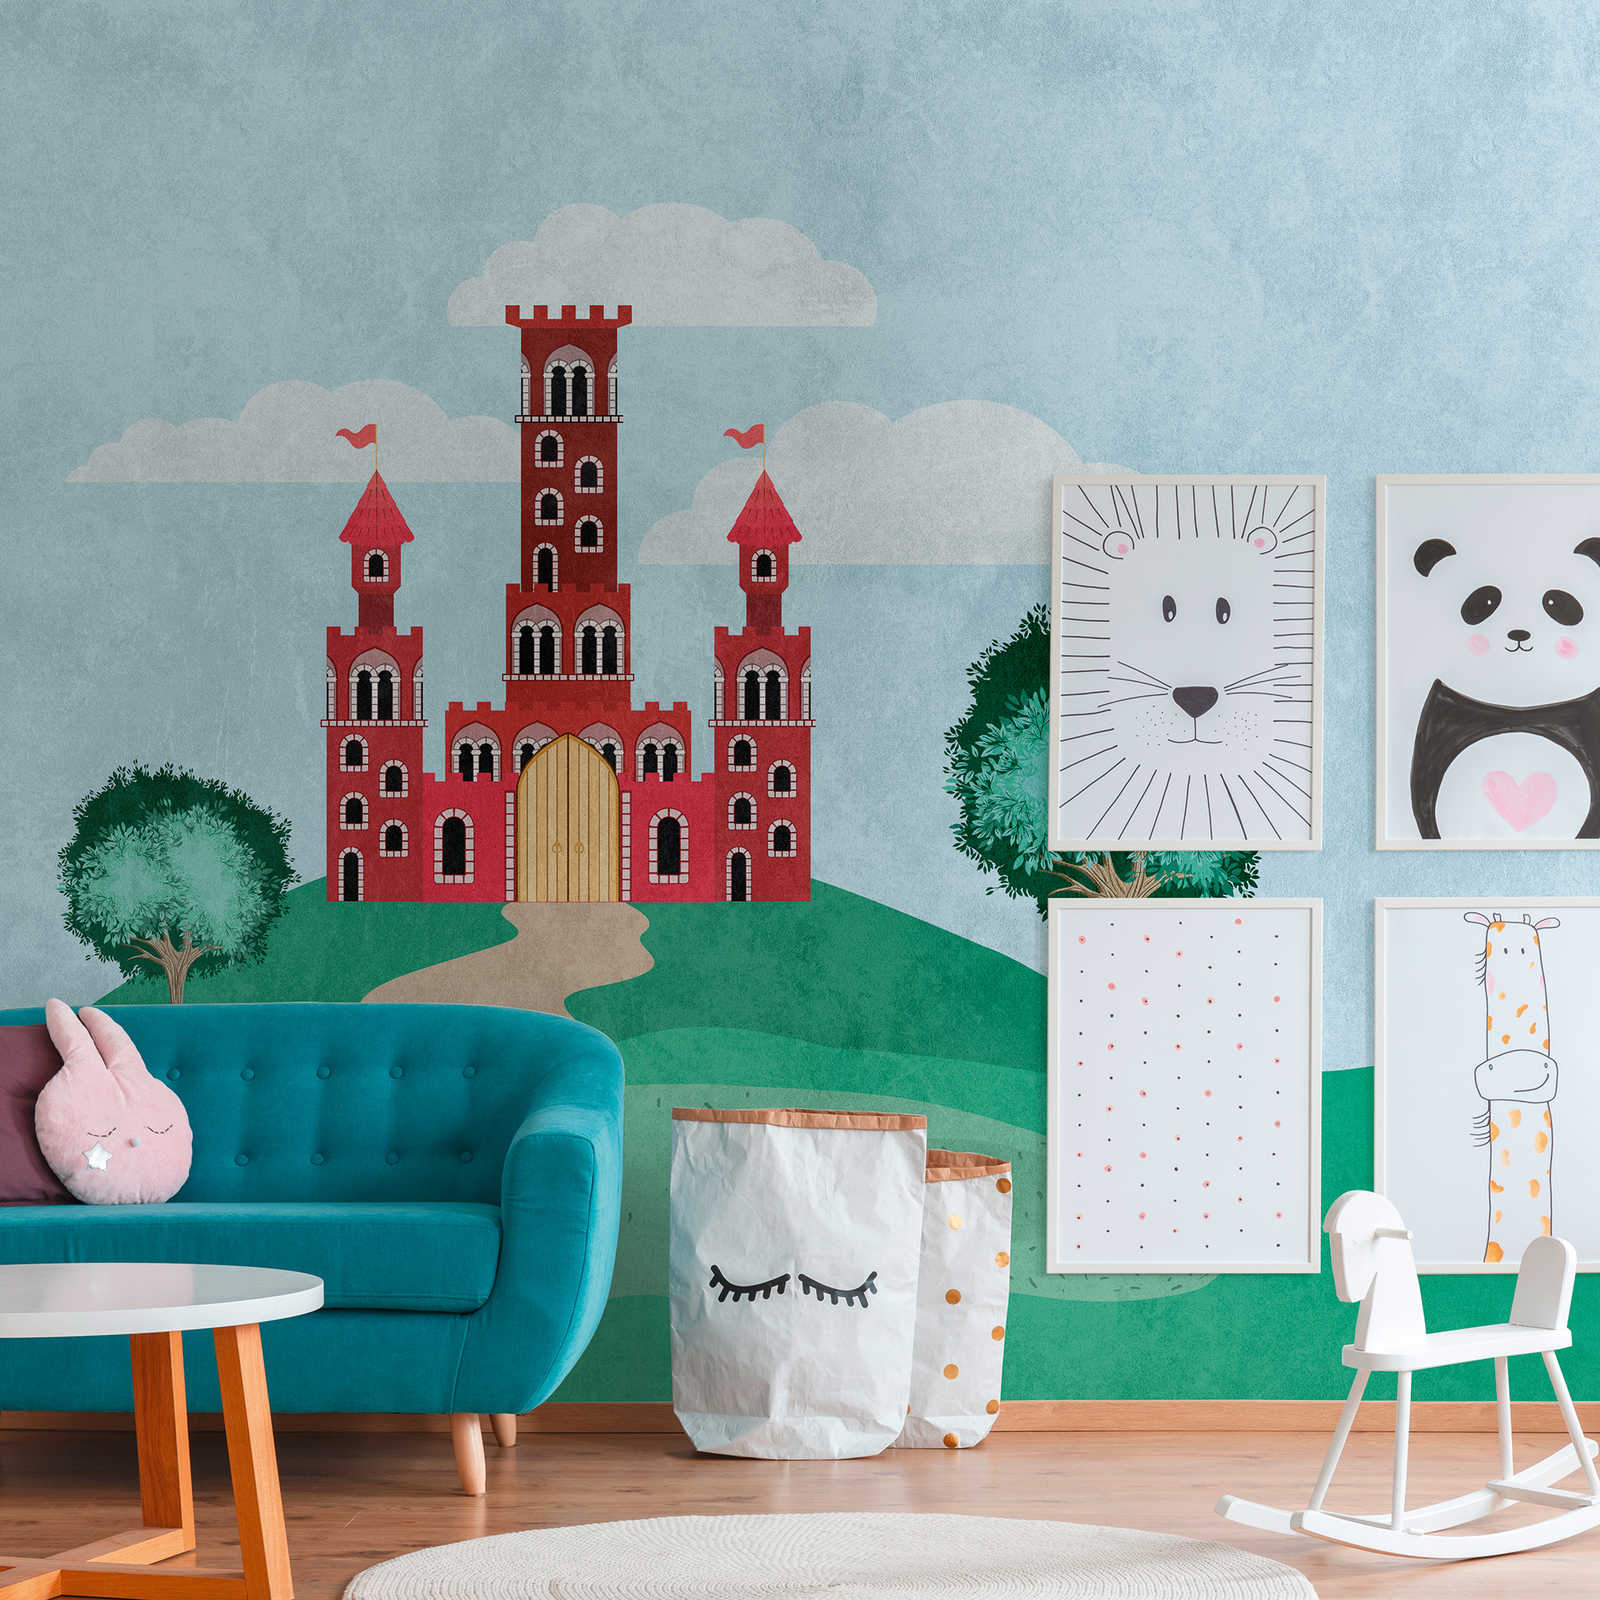 Wallpaper novelty - motif wallpaper fairy tale castle for the nursery
